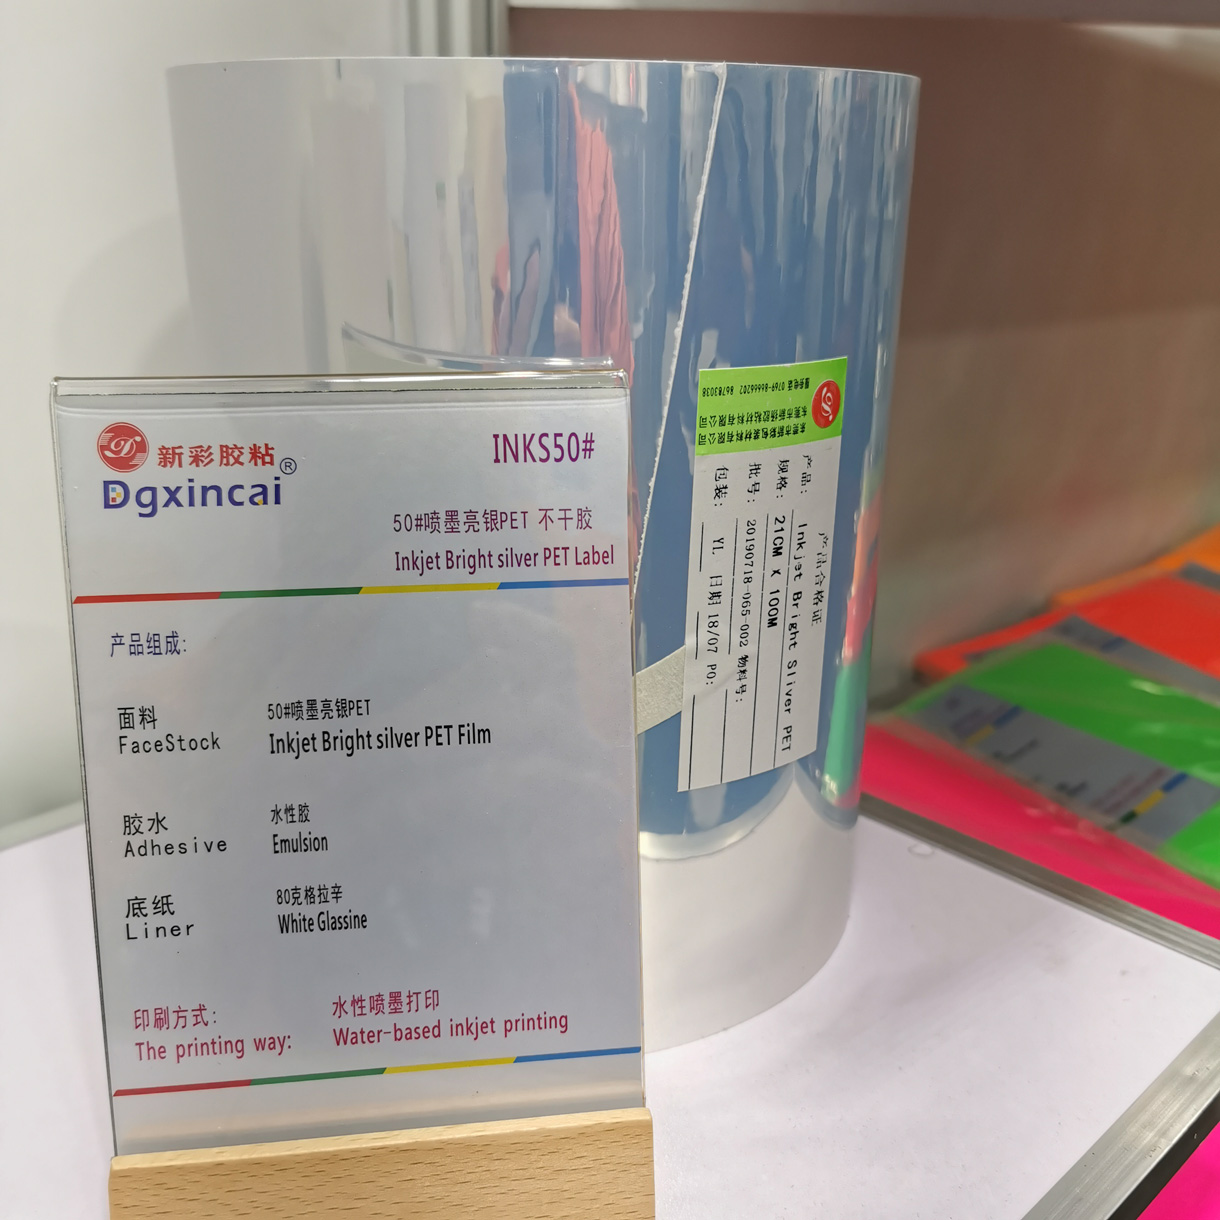 东莞市新彩包装材料有限公司将亮相CIPPME上海包装展